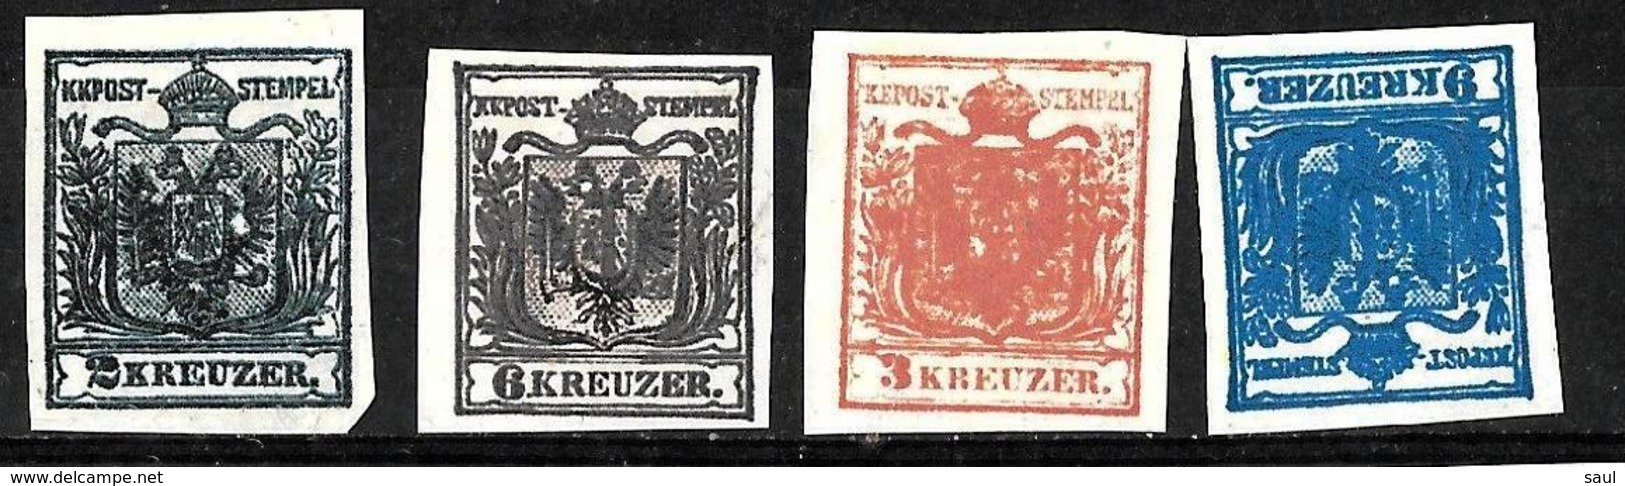 158 - AUSTRIA - AUTRICHE - 1850 - FORGERIES, FALSES, FAKES, FAUX, FALSOS, FALSCHEN - Non Classés